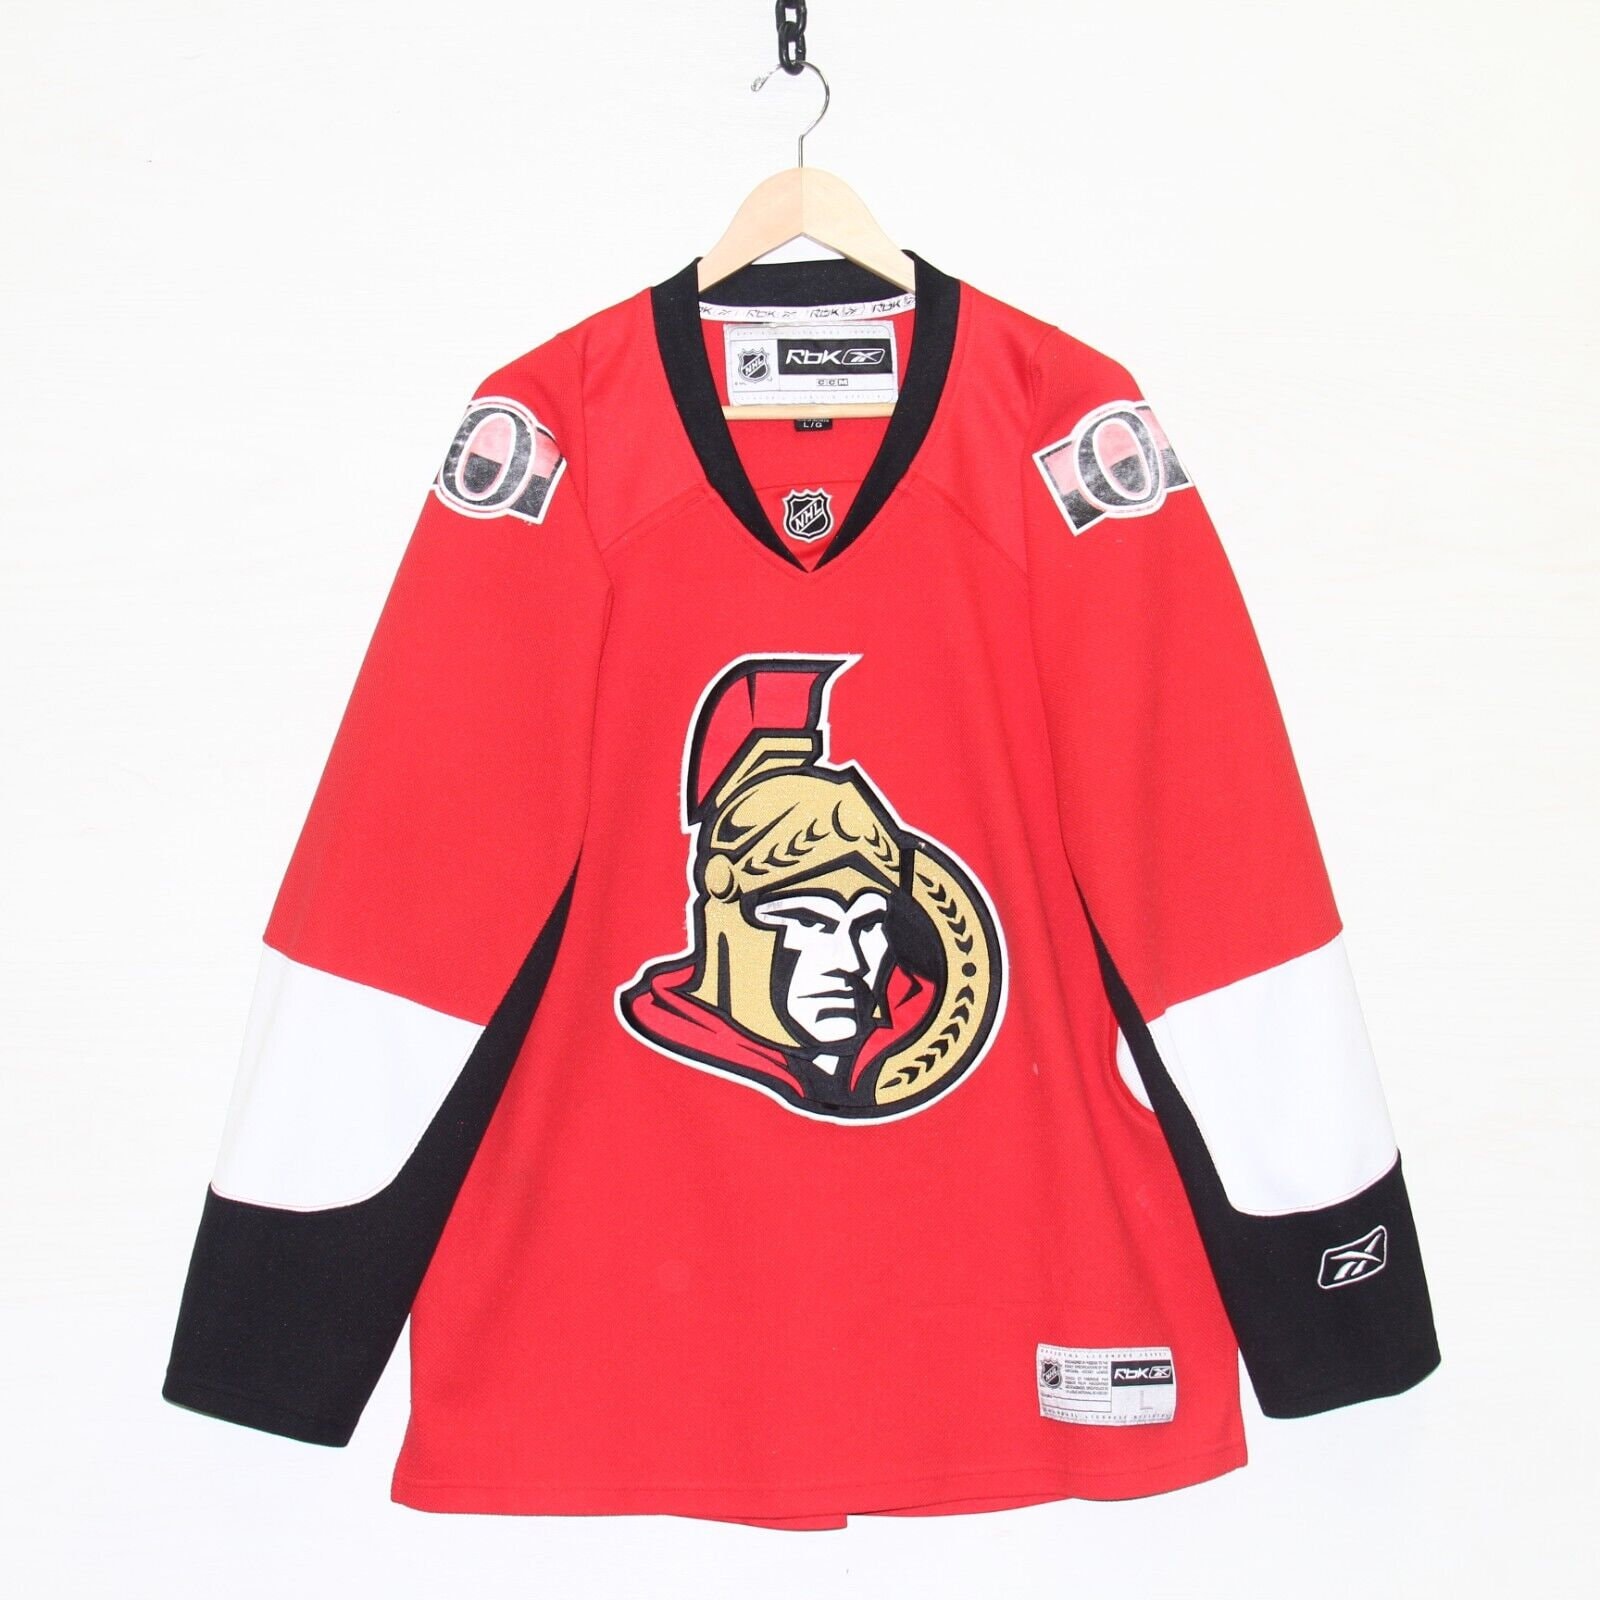 NHL Youth Ottawa Senators Matthew Tkachuk Jersey